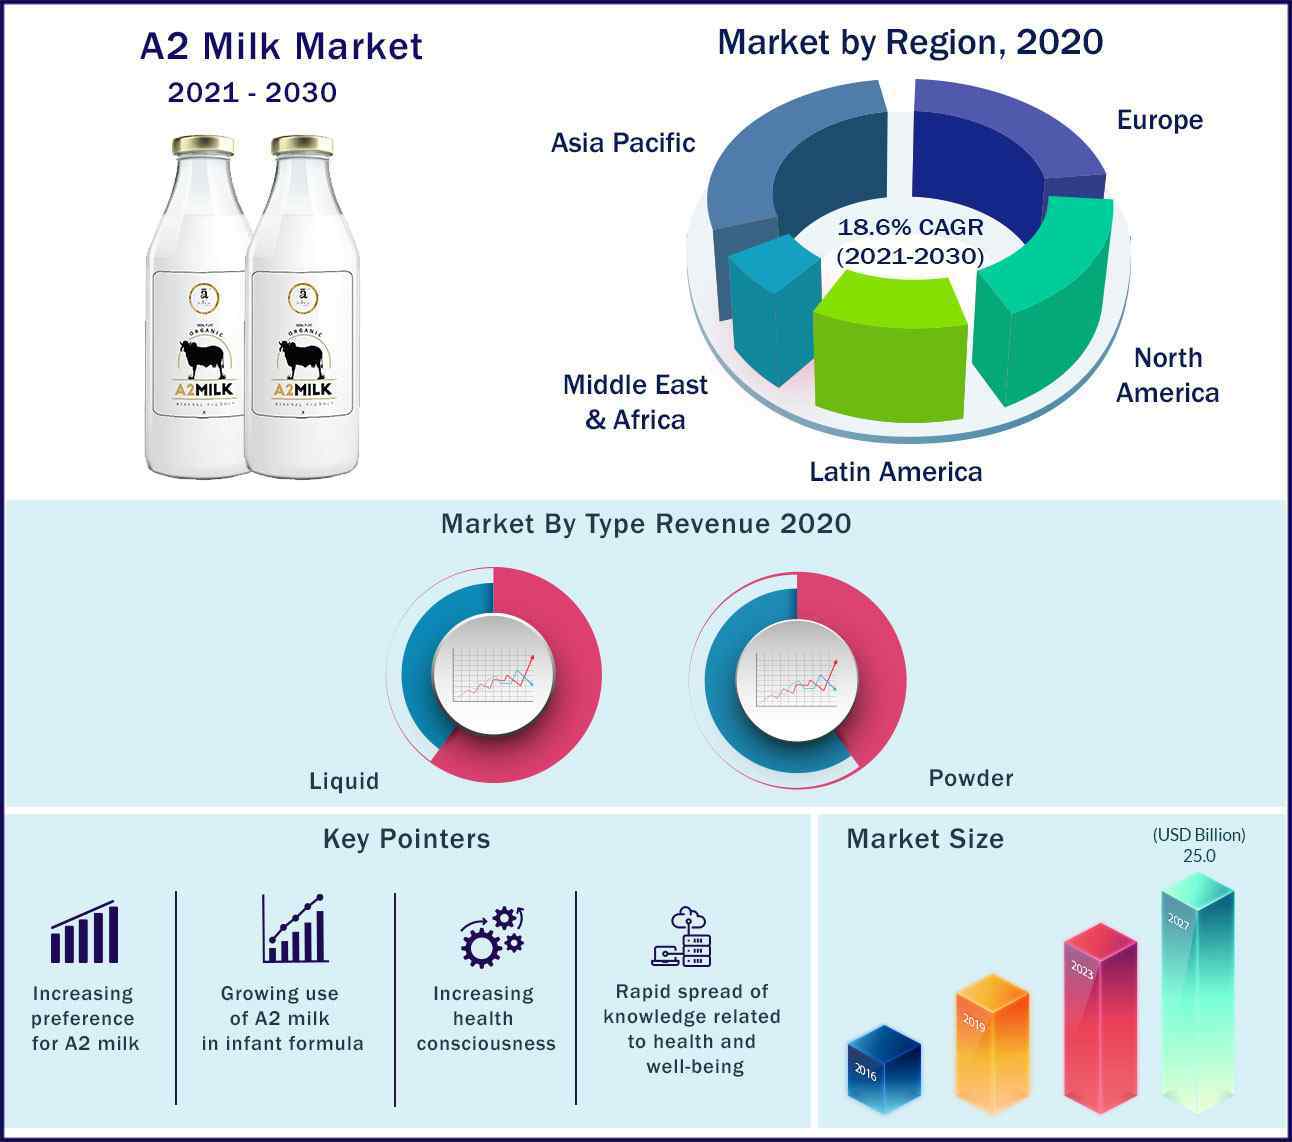 Global A2 Milk Market 2021-2030